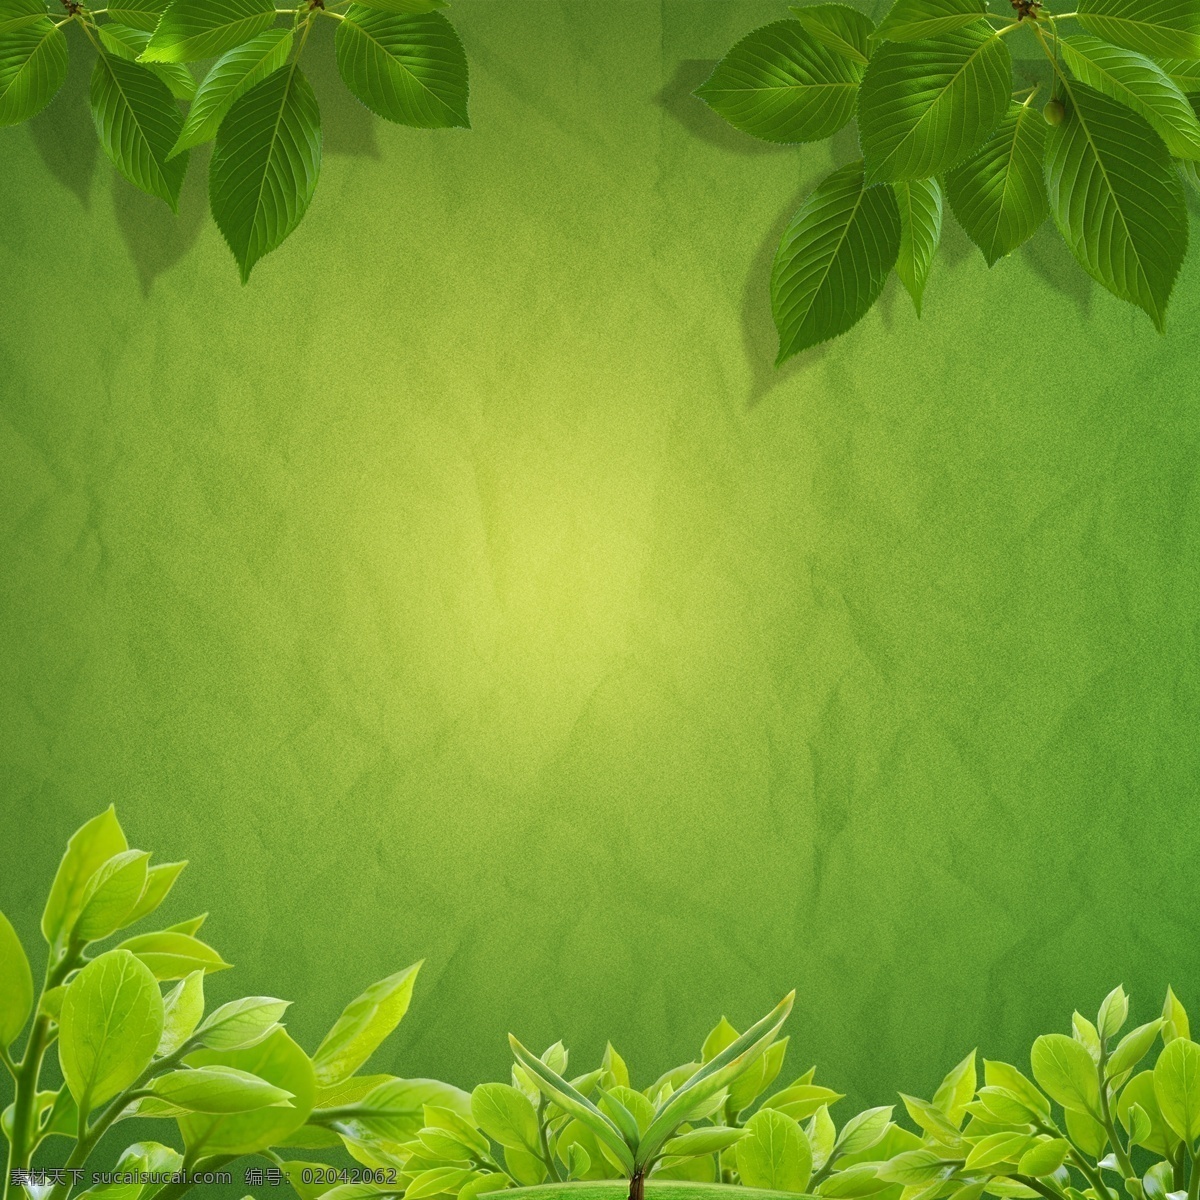 树叶 绿叶 绿化 嫩叶 高光 背景 新生 高光背景素材 广告素材 绿色背景素材